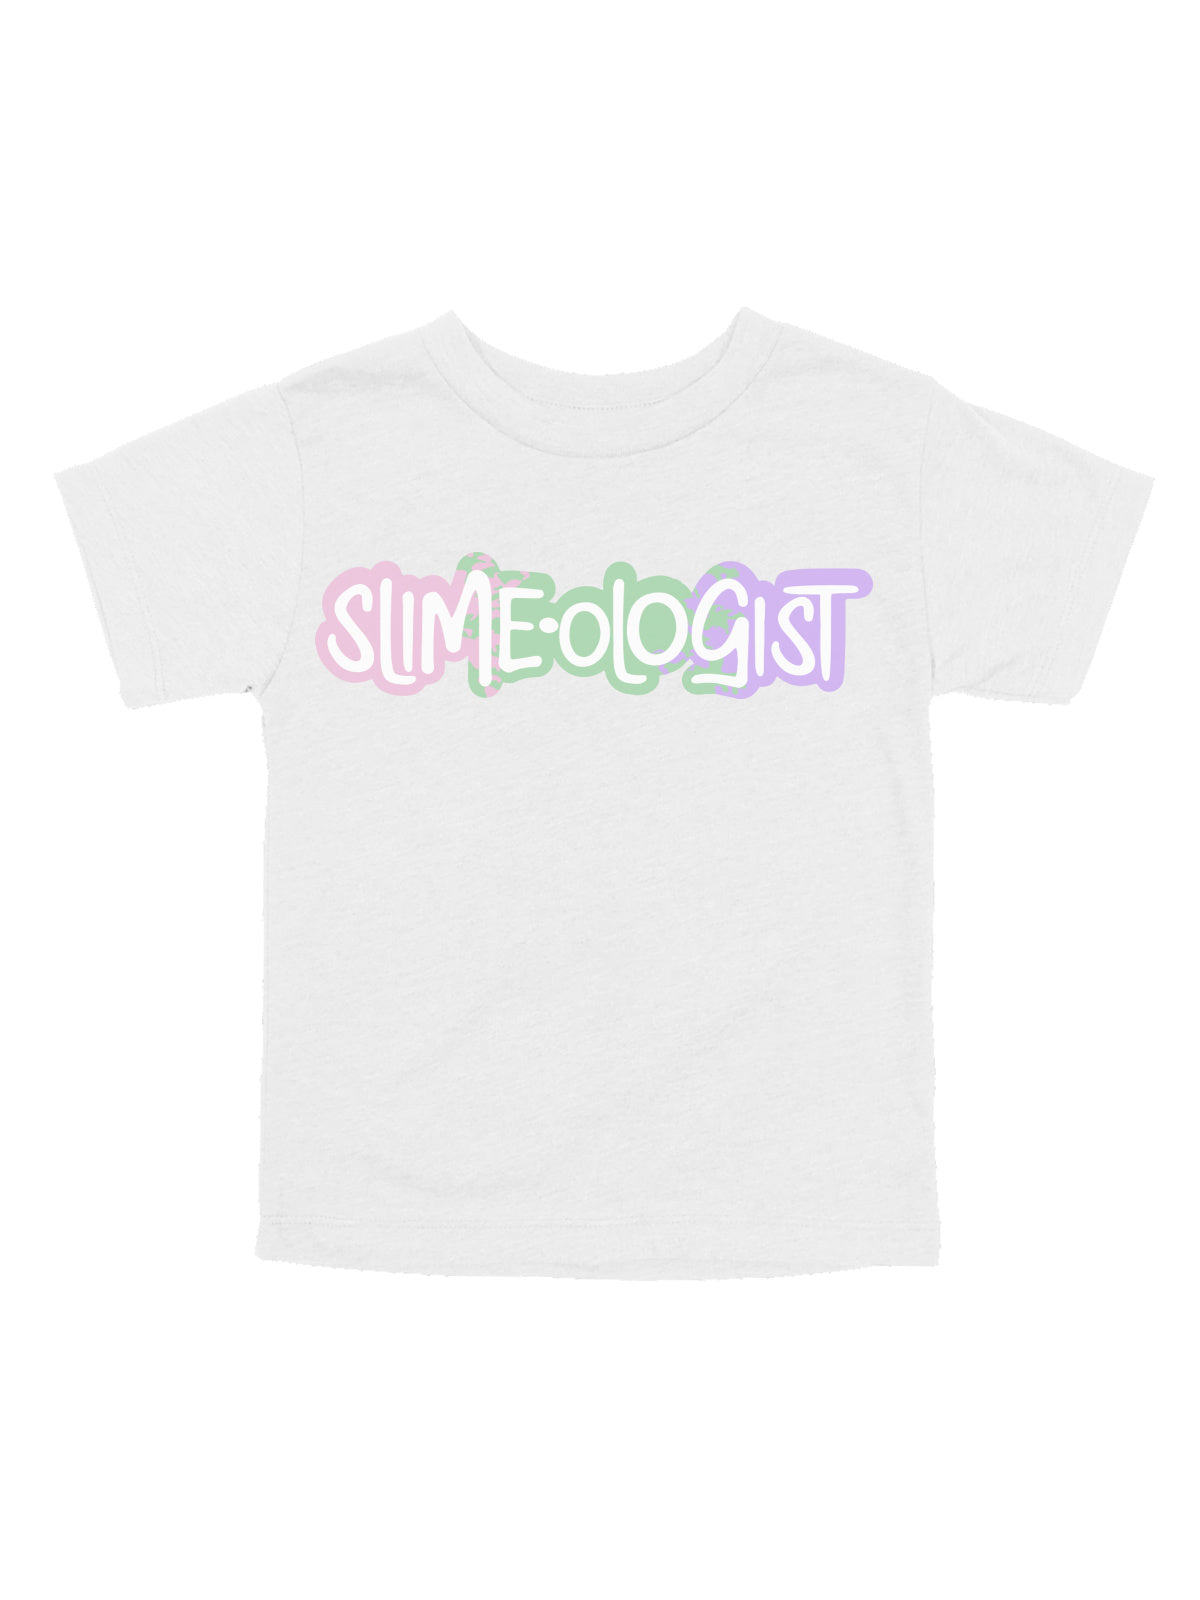 Slimeologist Kids Dark Gray Shirt